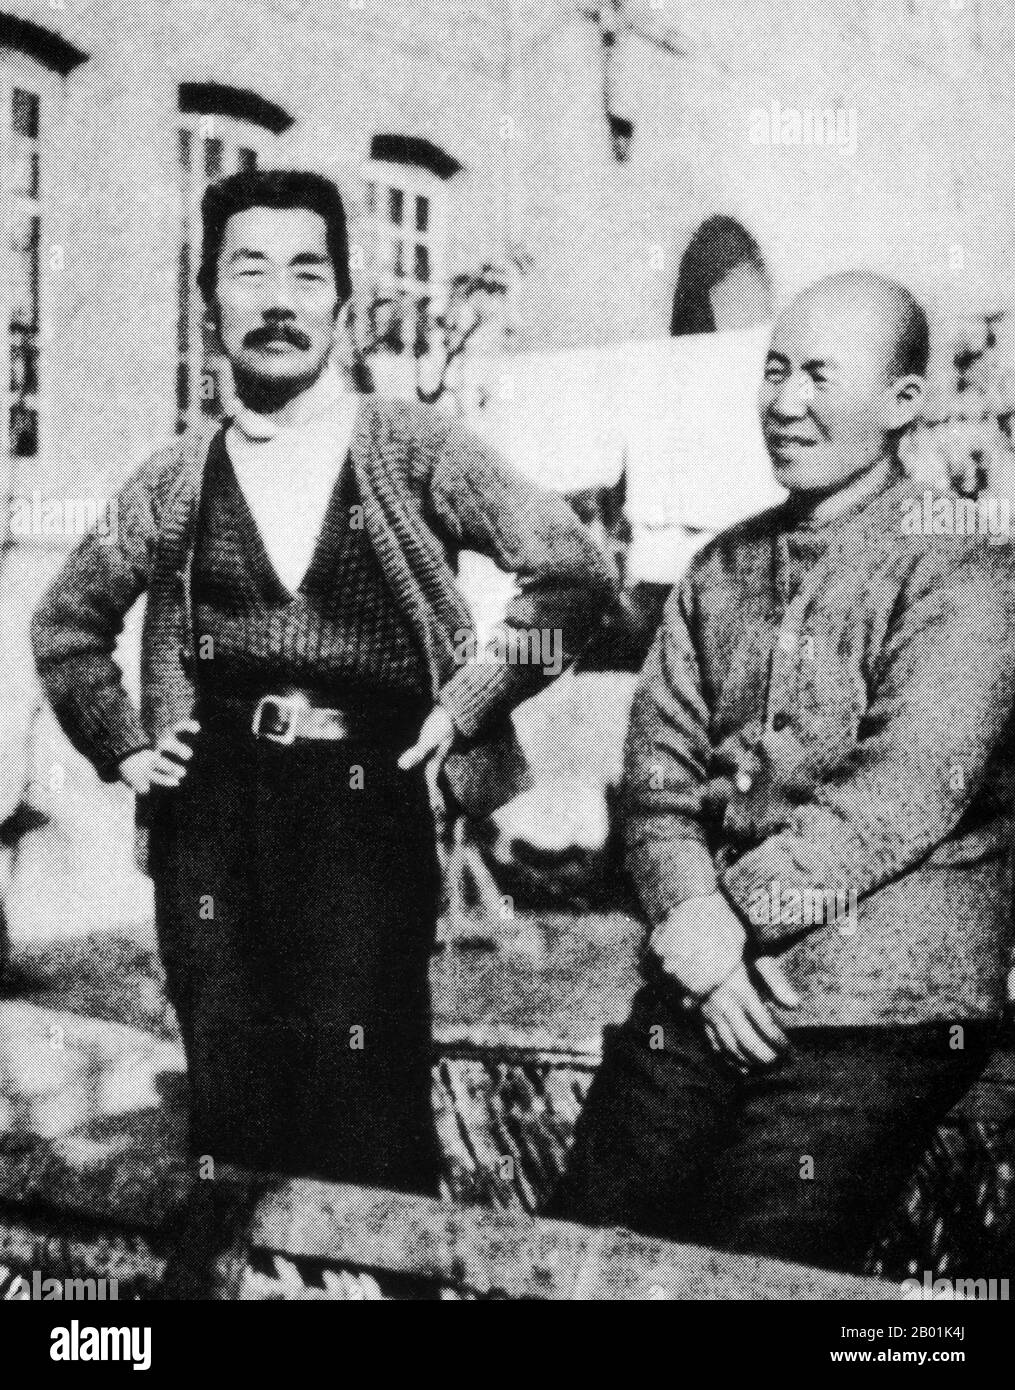 China: Der Schriftsteller Lu Xun (25. September 1881 – 19. Oktober 1936) zusammen mit seinem engen japanischen Freund Kanzo Uchiyama (11. Januar 1885 – 20. September 1959) in Shanghai, um 1934. Kanzo Uchiyama ließ sich mit seiner Frau kurz nach ihrer Hochzeit im März 1916 in Shanghai nieder. Er gründete 1917 einen Buchladen an der North Sichuan Road an einer anderen Adresse als der, wo der Laden von 1929 bis 1945 prosperierte. Kanzo und Lu Xun trafen sich erstmals im Oktober 1927 in der ursprünglichen Buchhandlung, und ihre Freundschaft setzte sich bis zu Lu Xuns Tod fast zehn Jahre später fort. Stockfoto